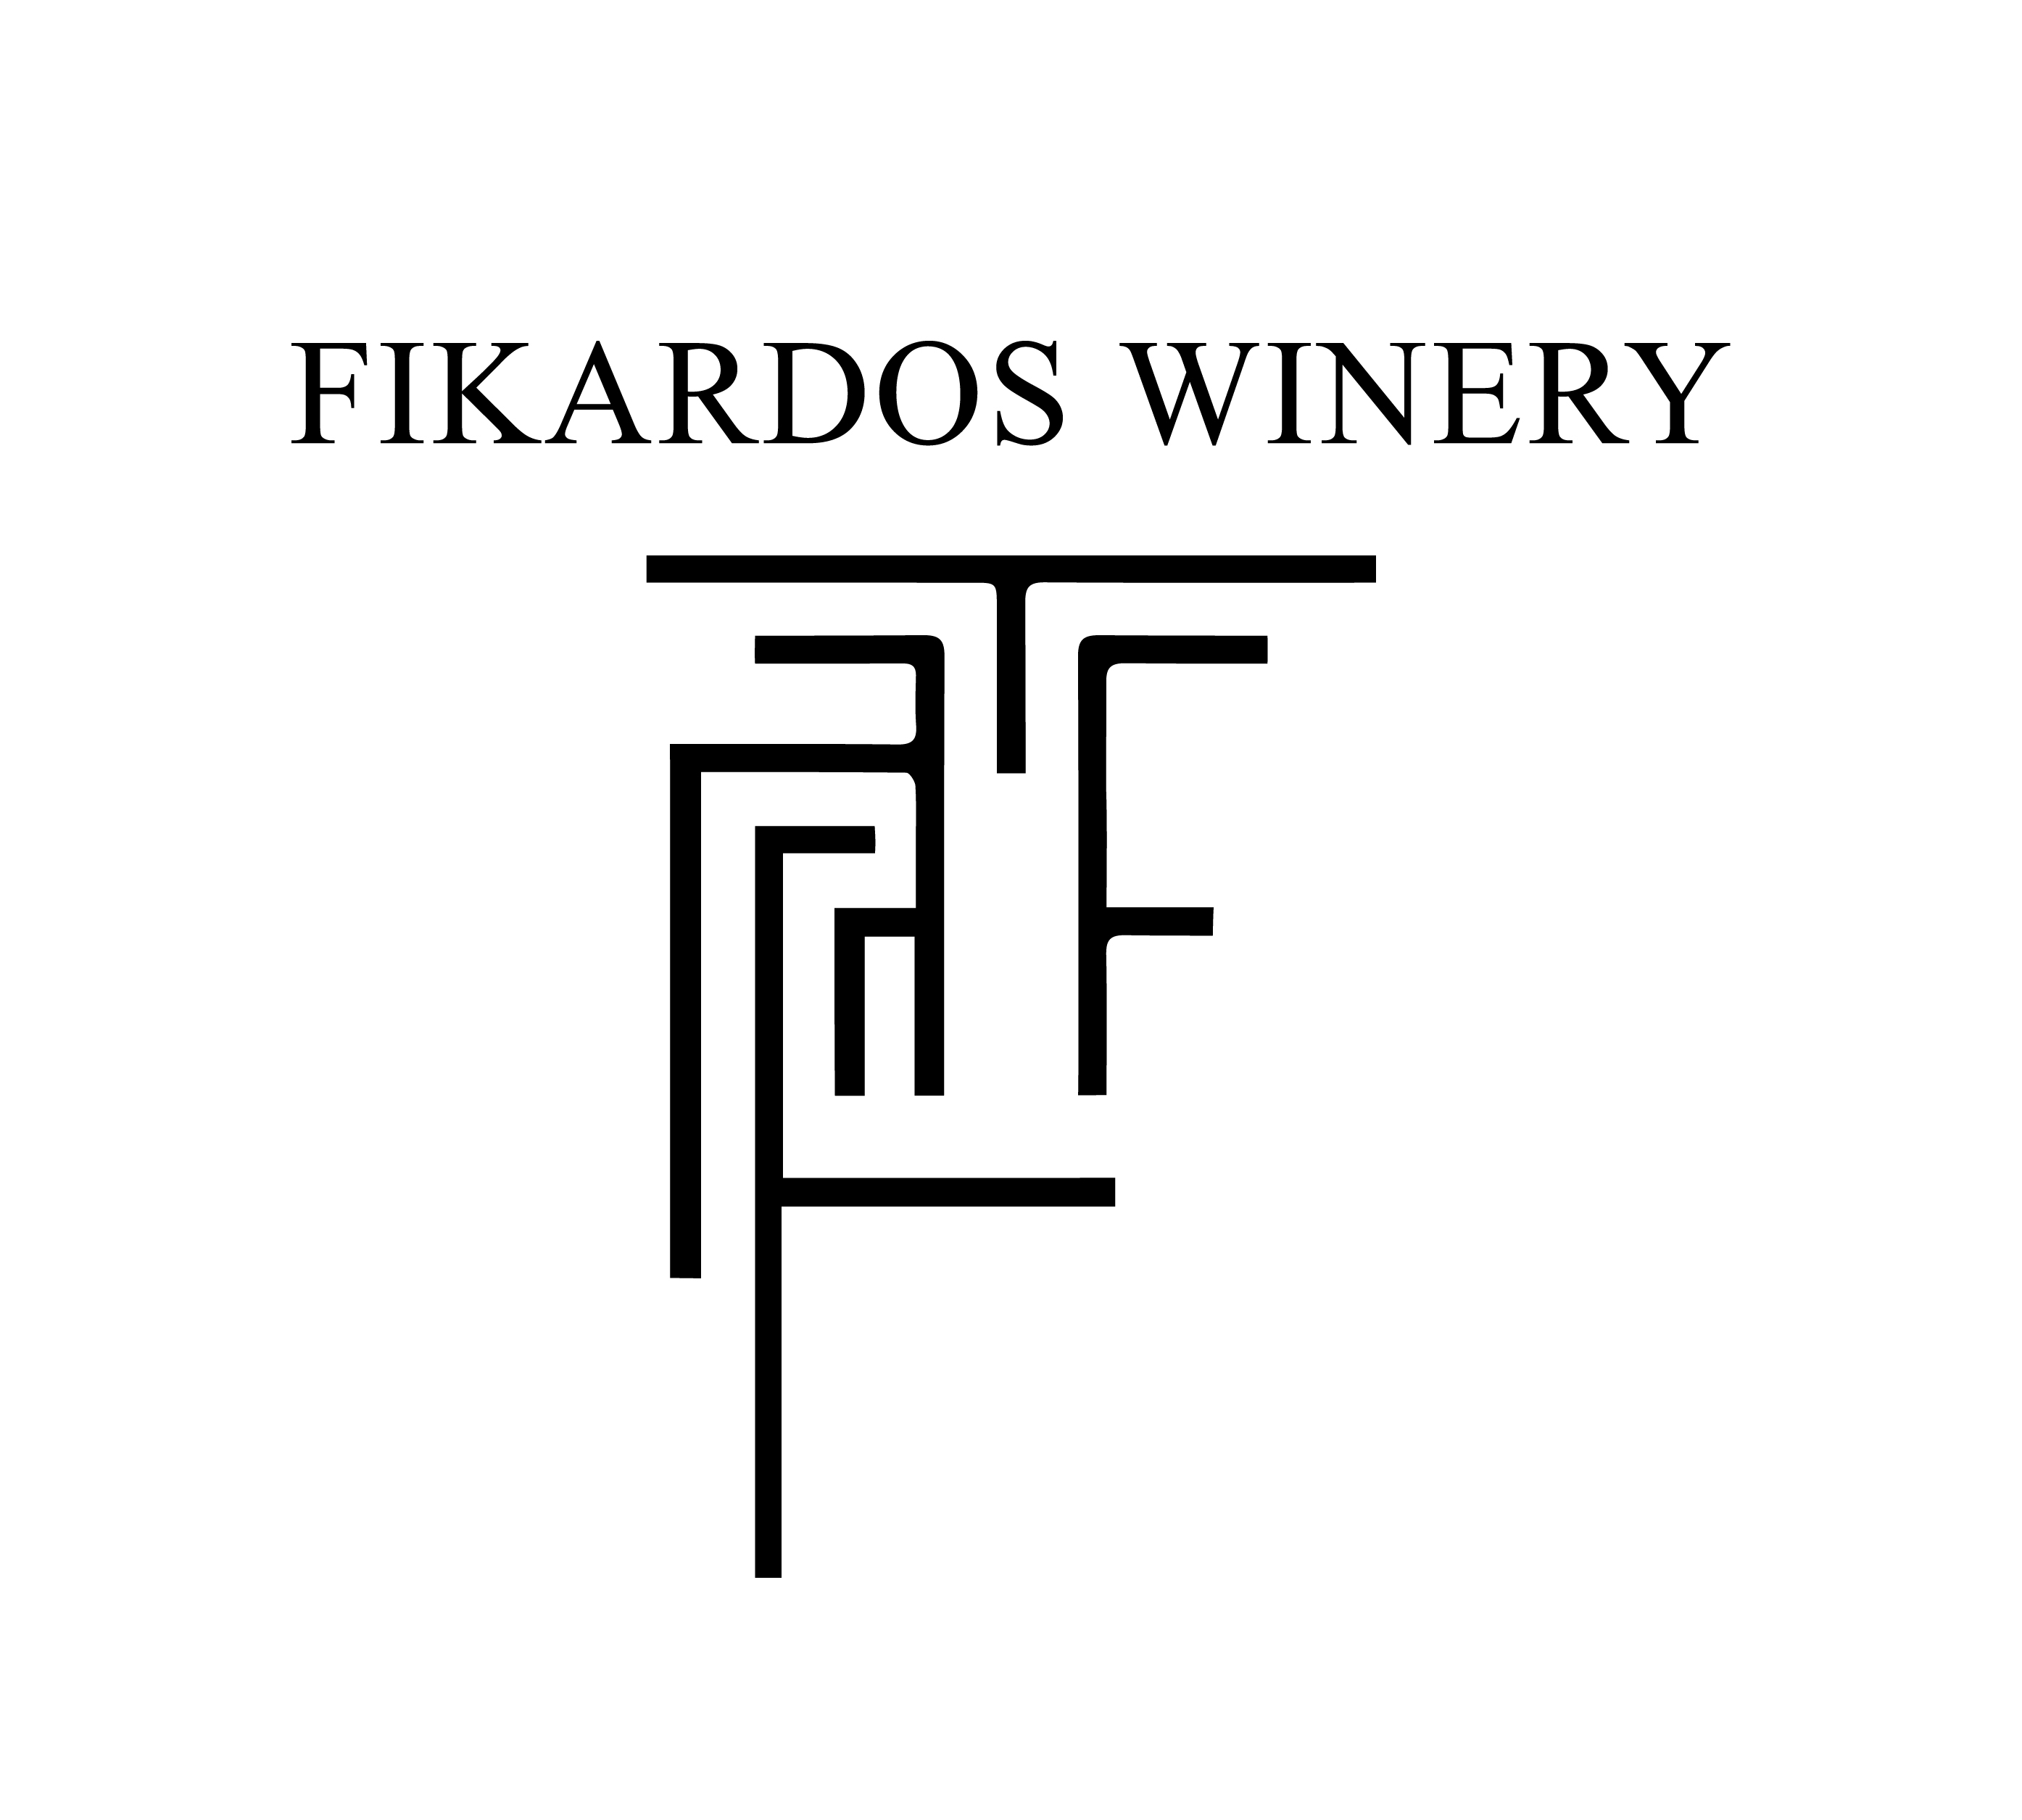 FIkardos Winery